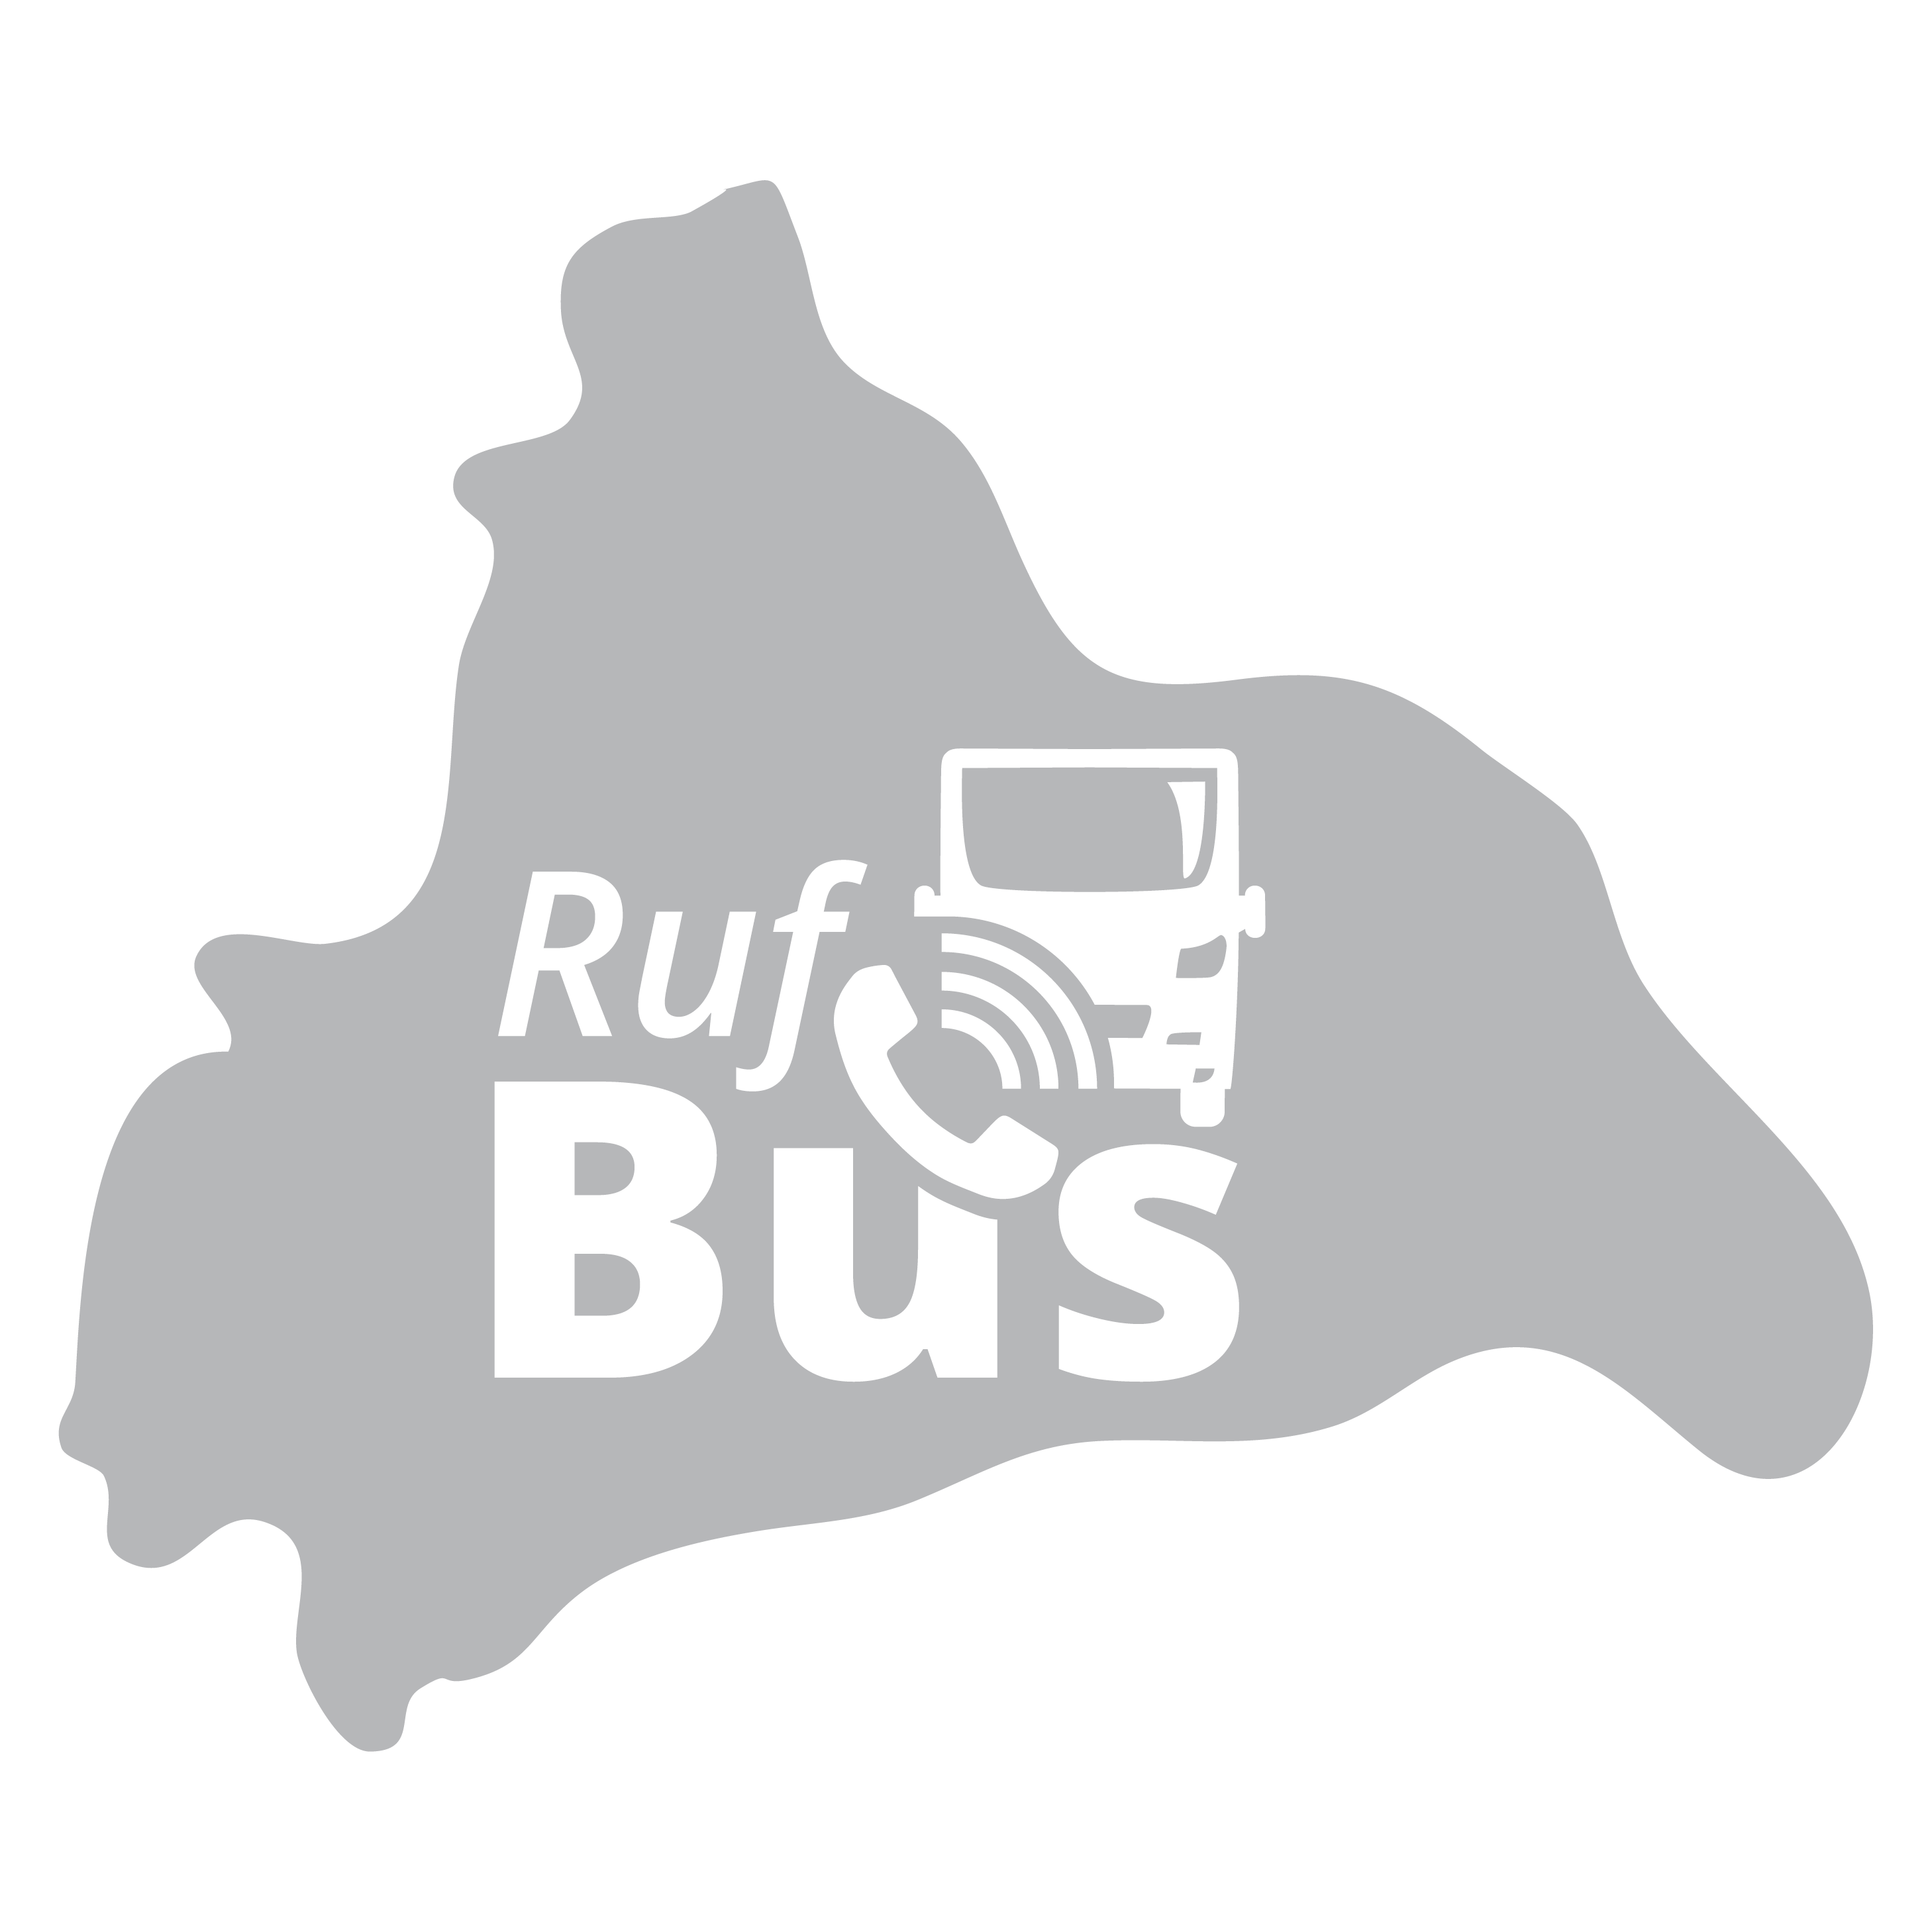 Beschriftung Rufbus auf Landkreis-Silhouette